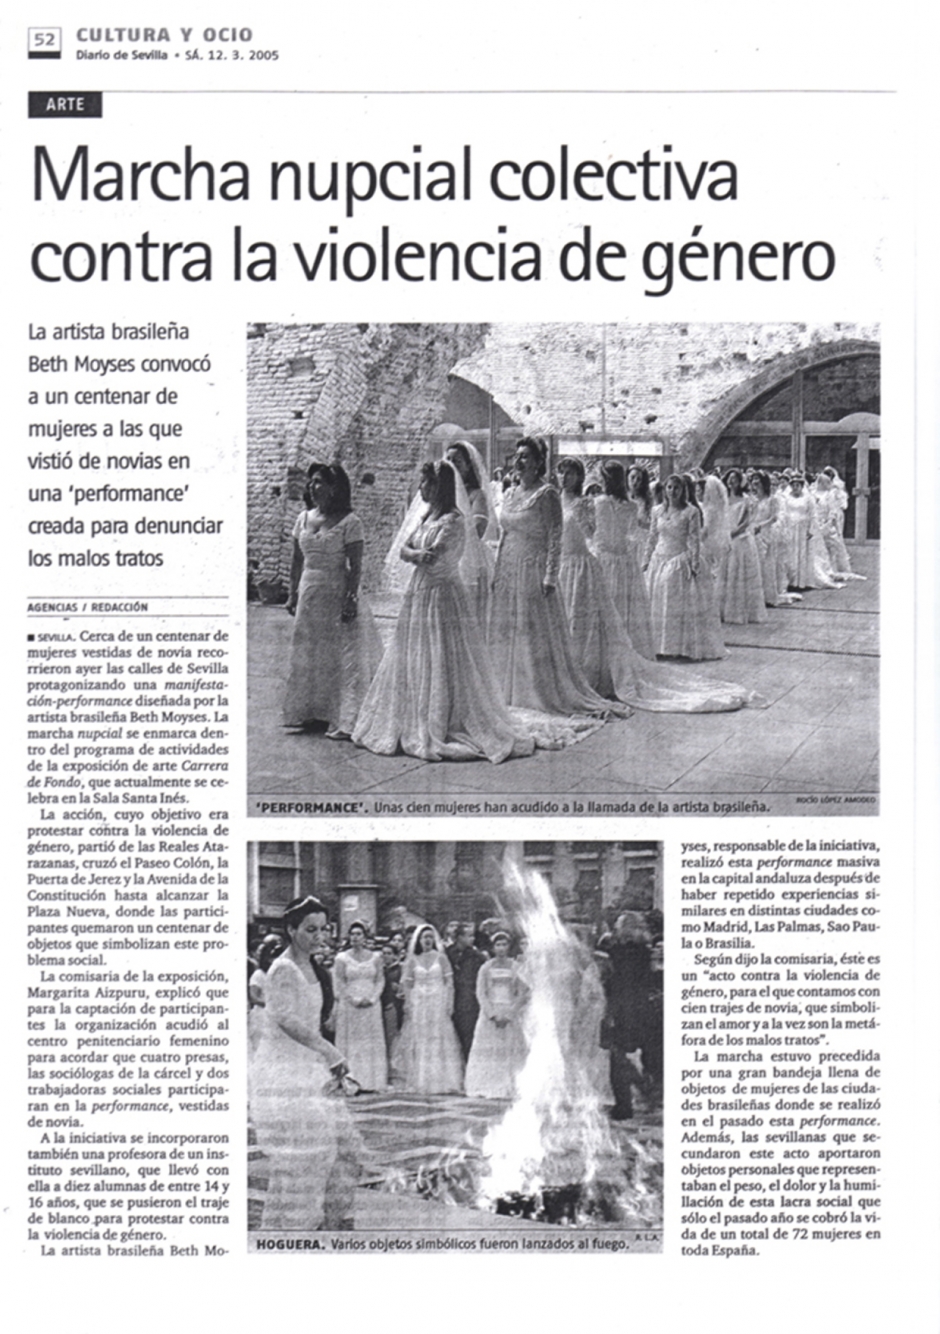 Diario de Sevilla – Cultura y Ocio – 2005 – Sevilla – España